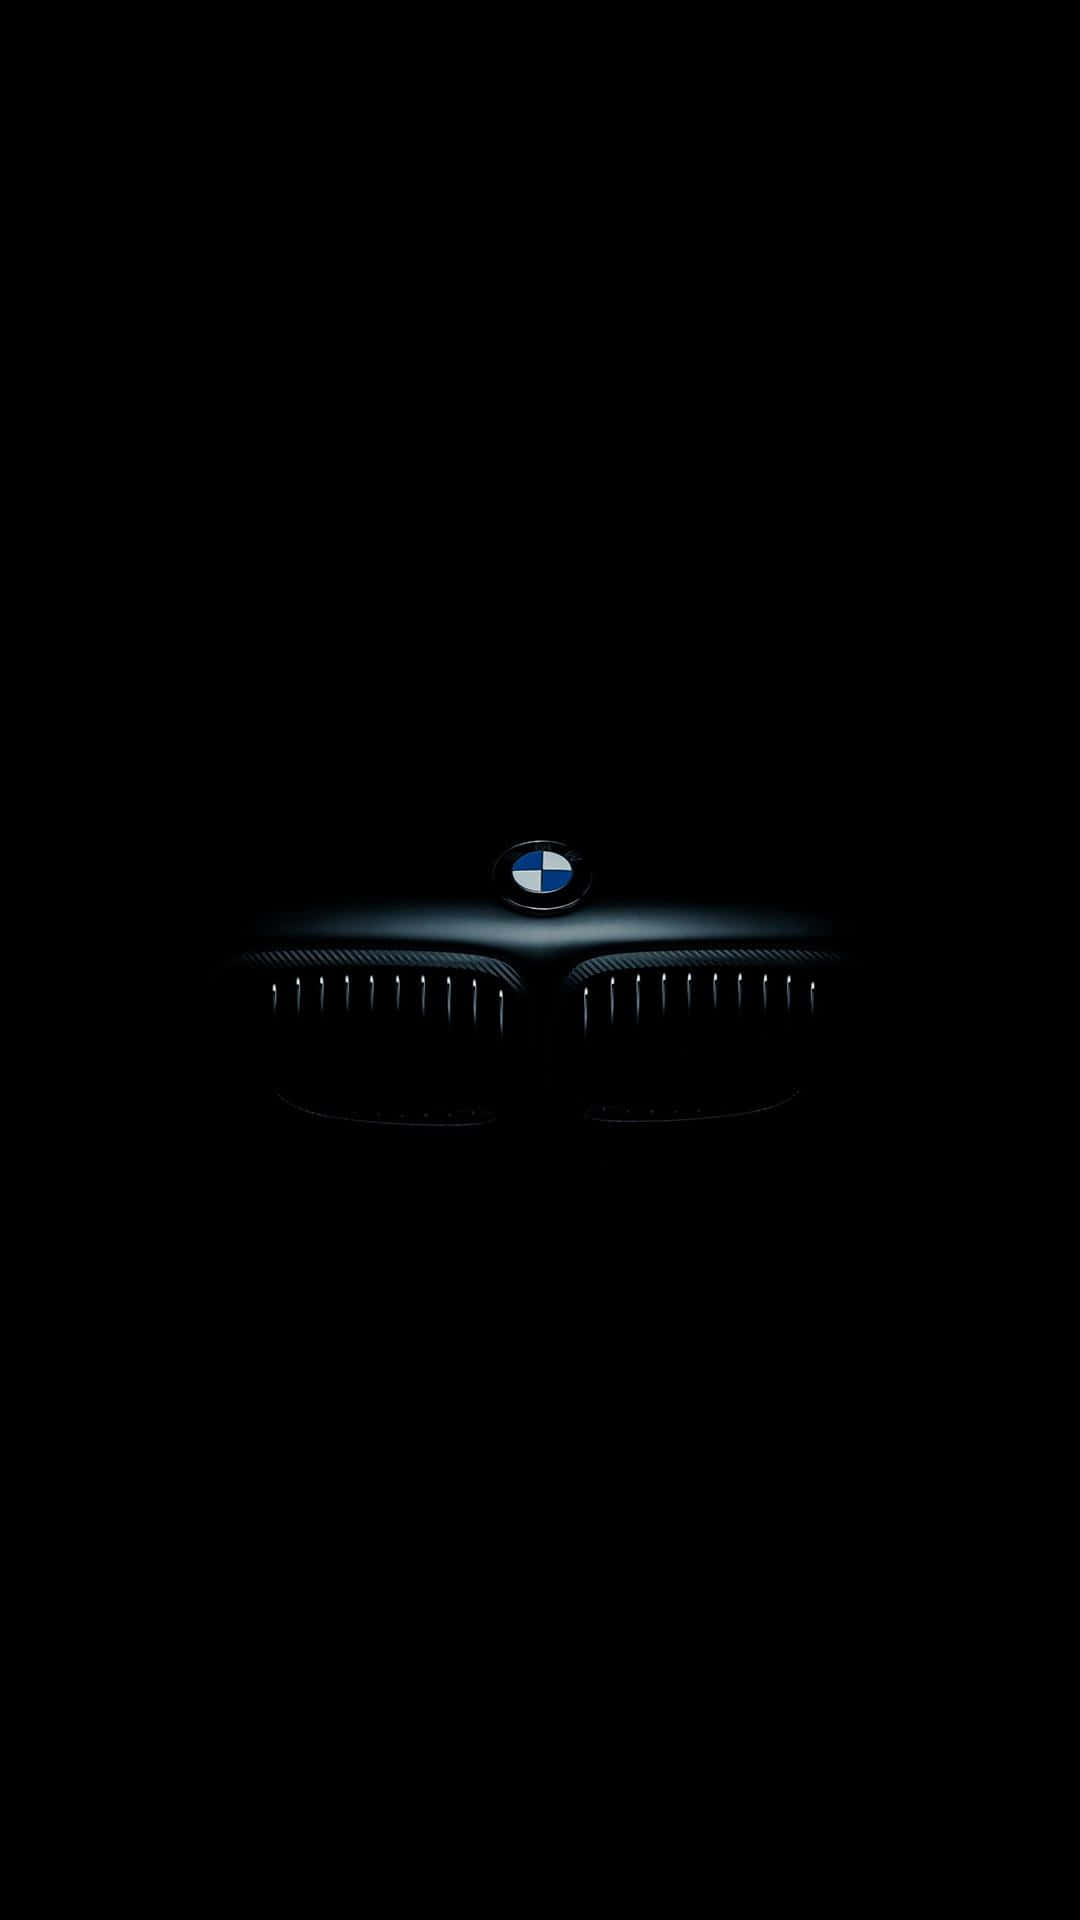 30BMW E30 - BMW E30 - BMW E30 - BMW E30 - BMW E30 Wallpaper